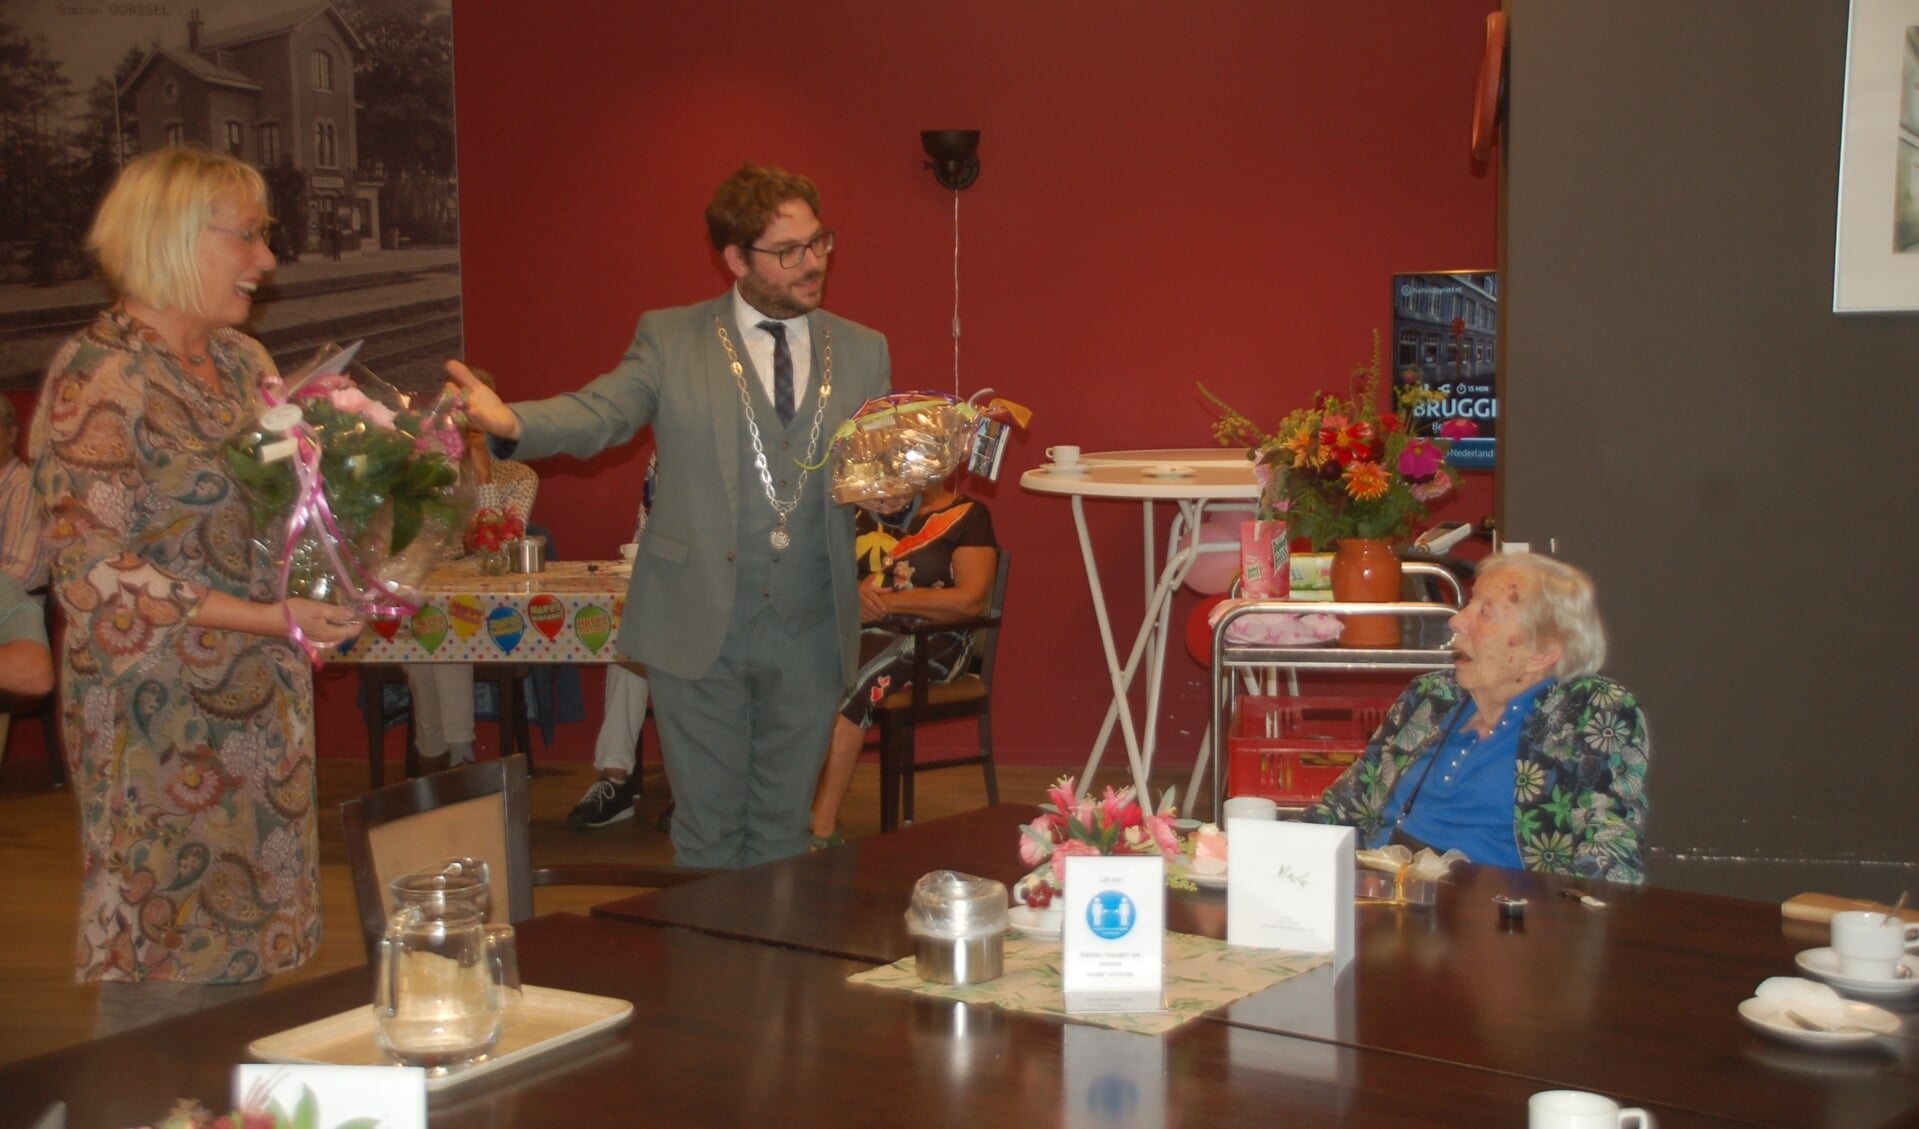 Burgemeesters Loes van der Meijs (Doesburg) en Sebastiaan van ’t Erve (Lochem) spreken de honderdjarige Gerrie toe. Foto: PR